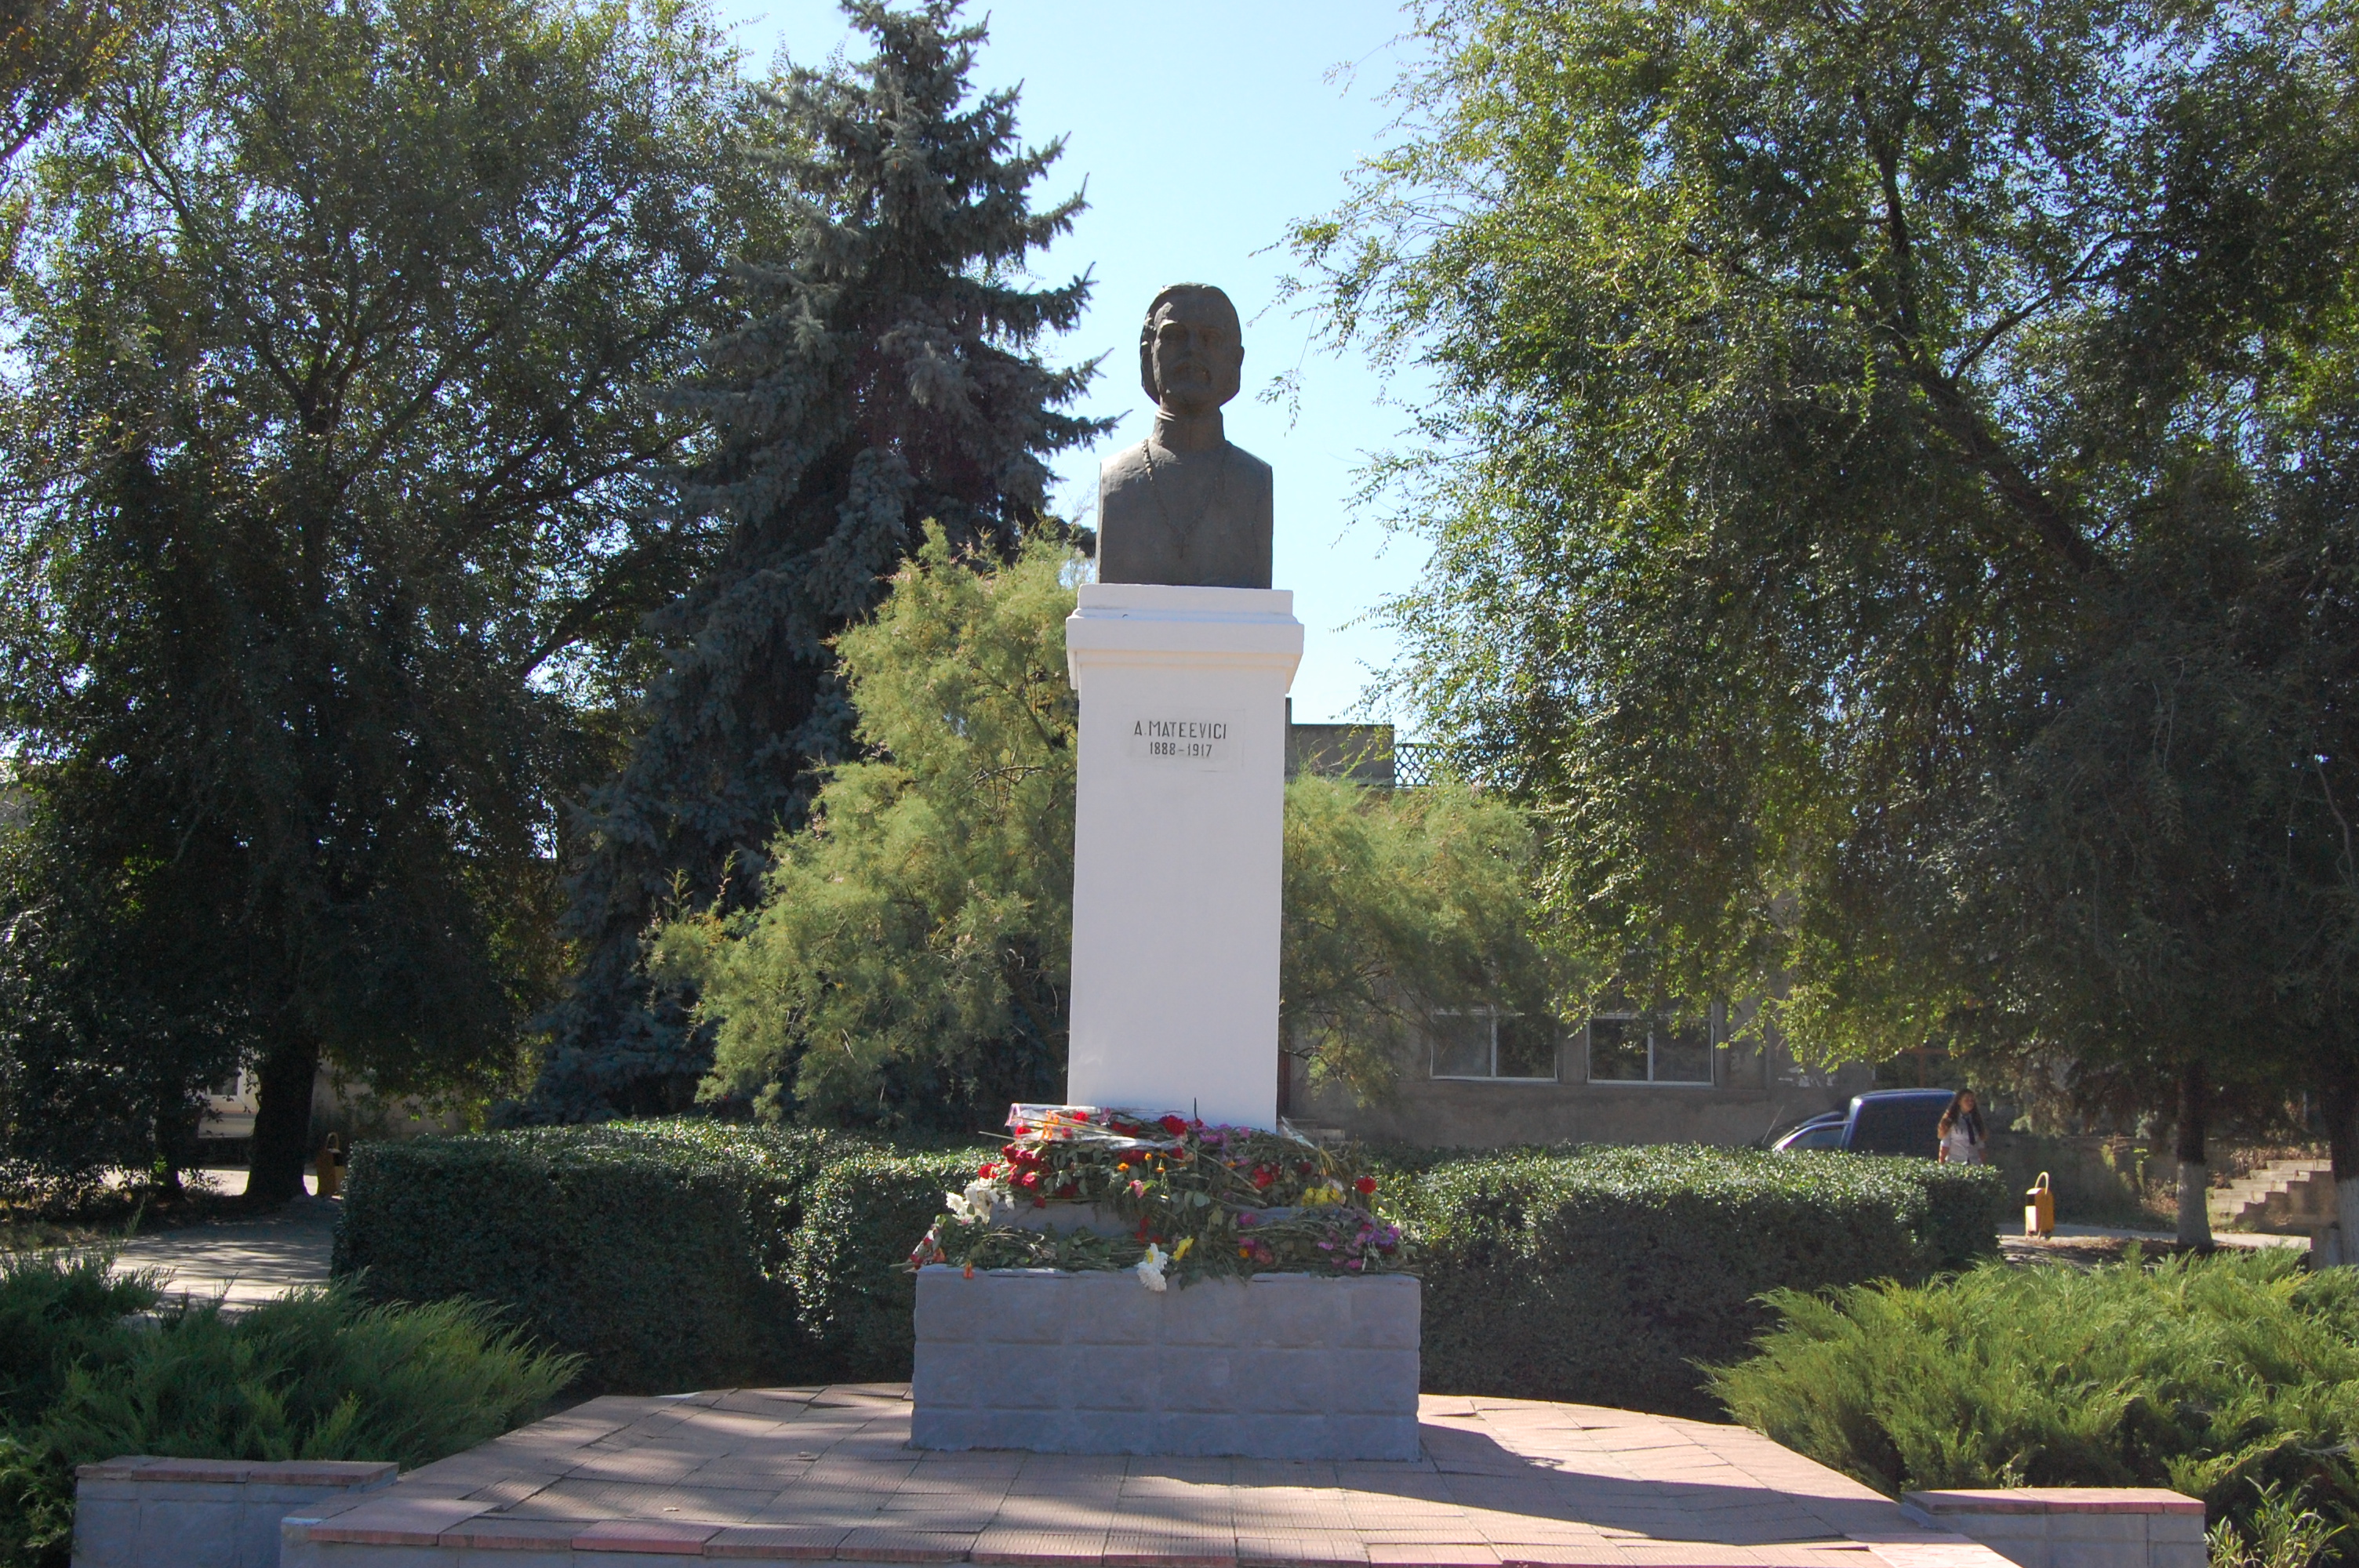 MD, Orasul Căuşeni, Monument lui Alexei Mateevici 1888-1917